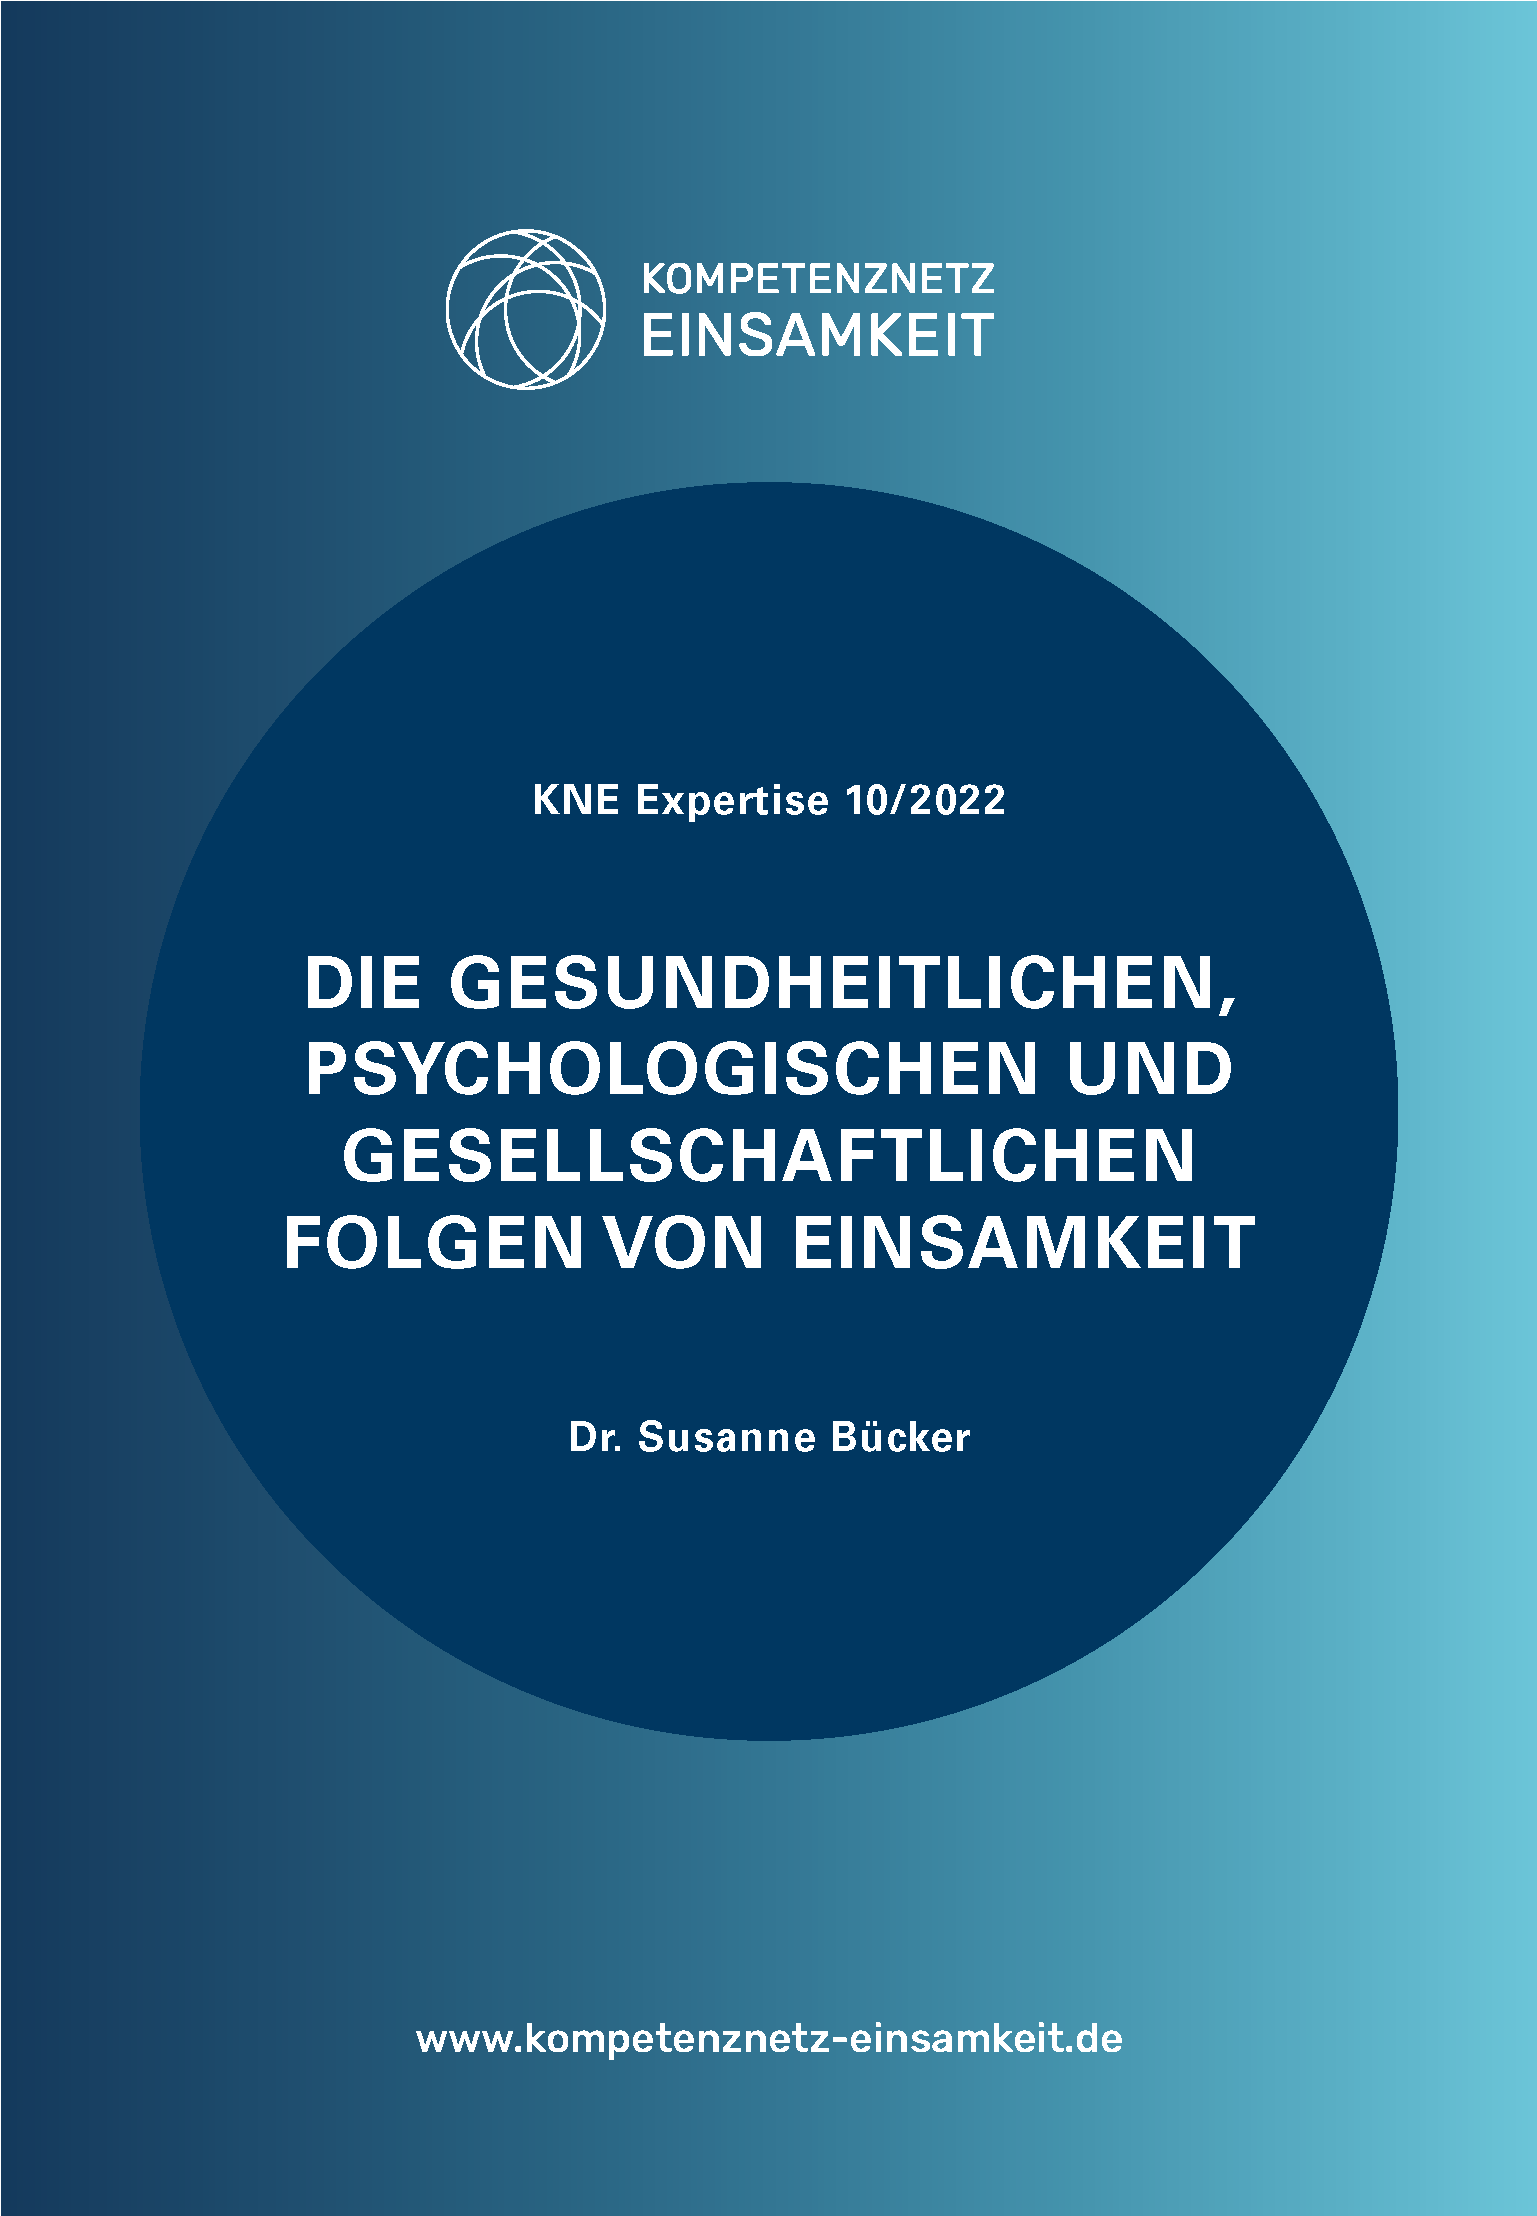 Cover der Expertise: Die gesundheitlichen, psychologischen und gesellschaftlichen Folgen von Einsamkeit, Dr. Susanne Bücker